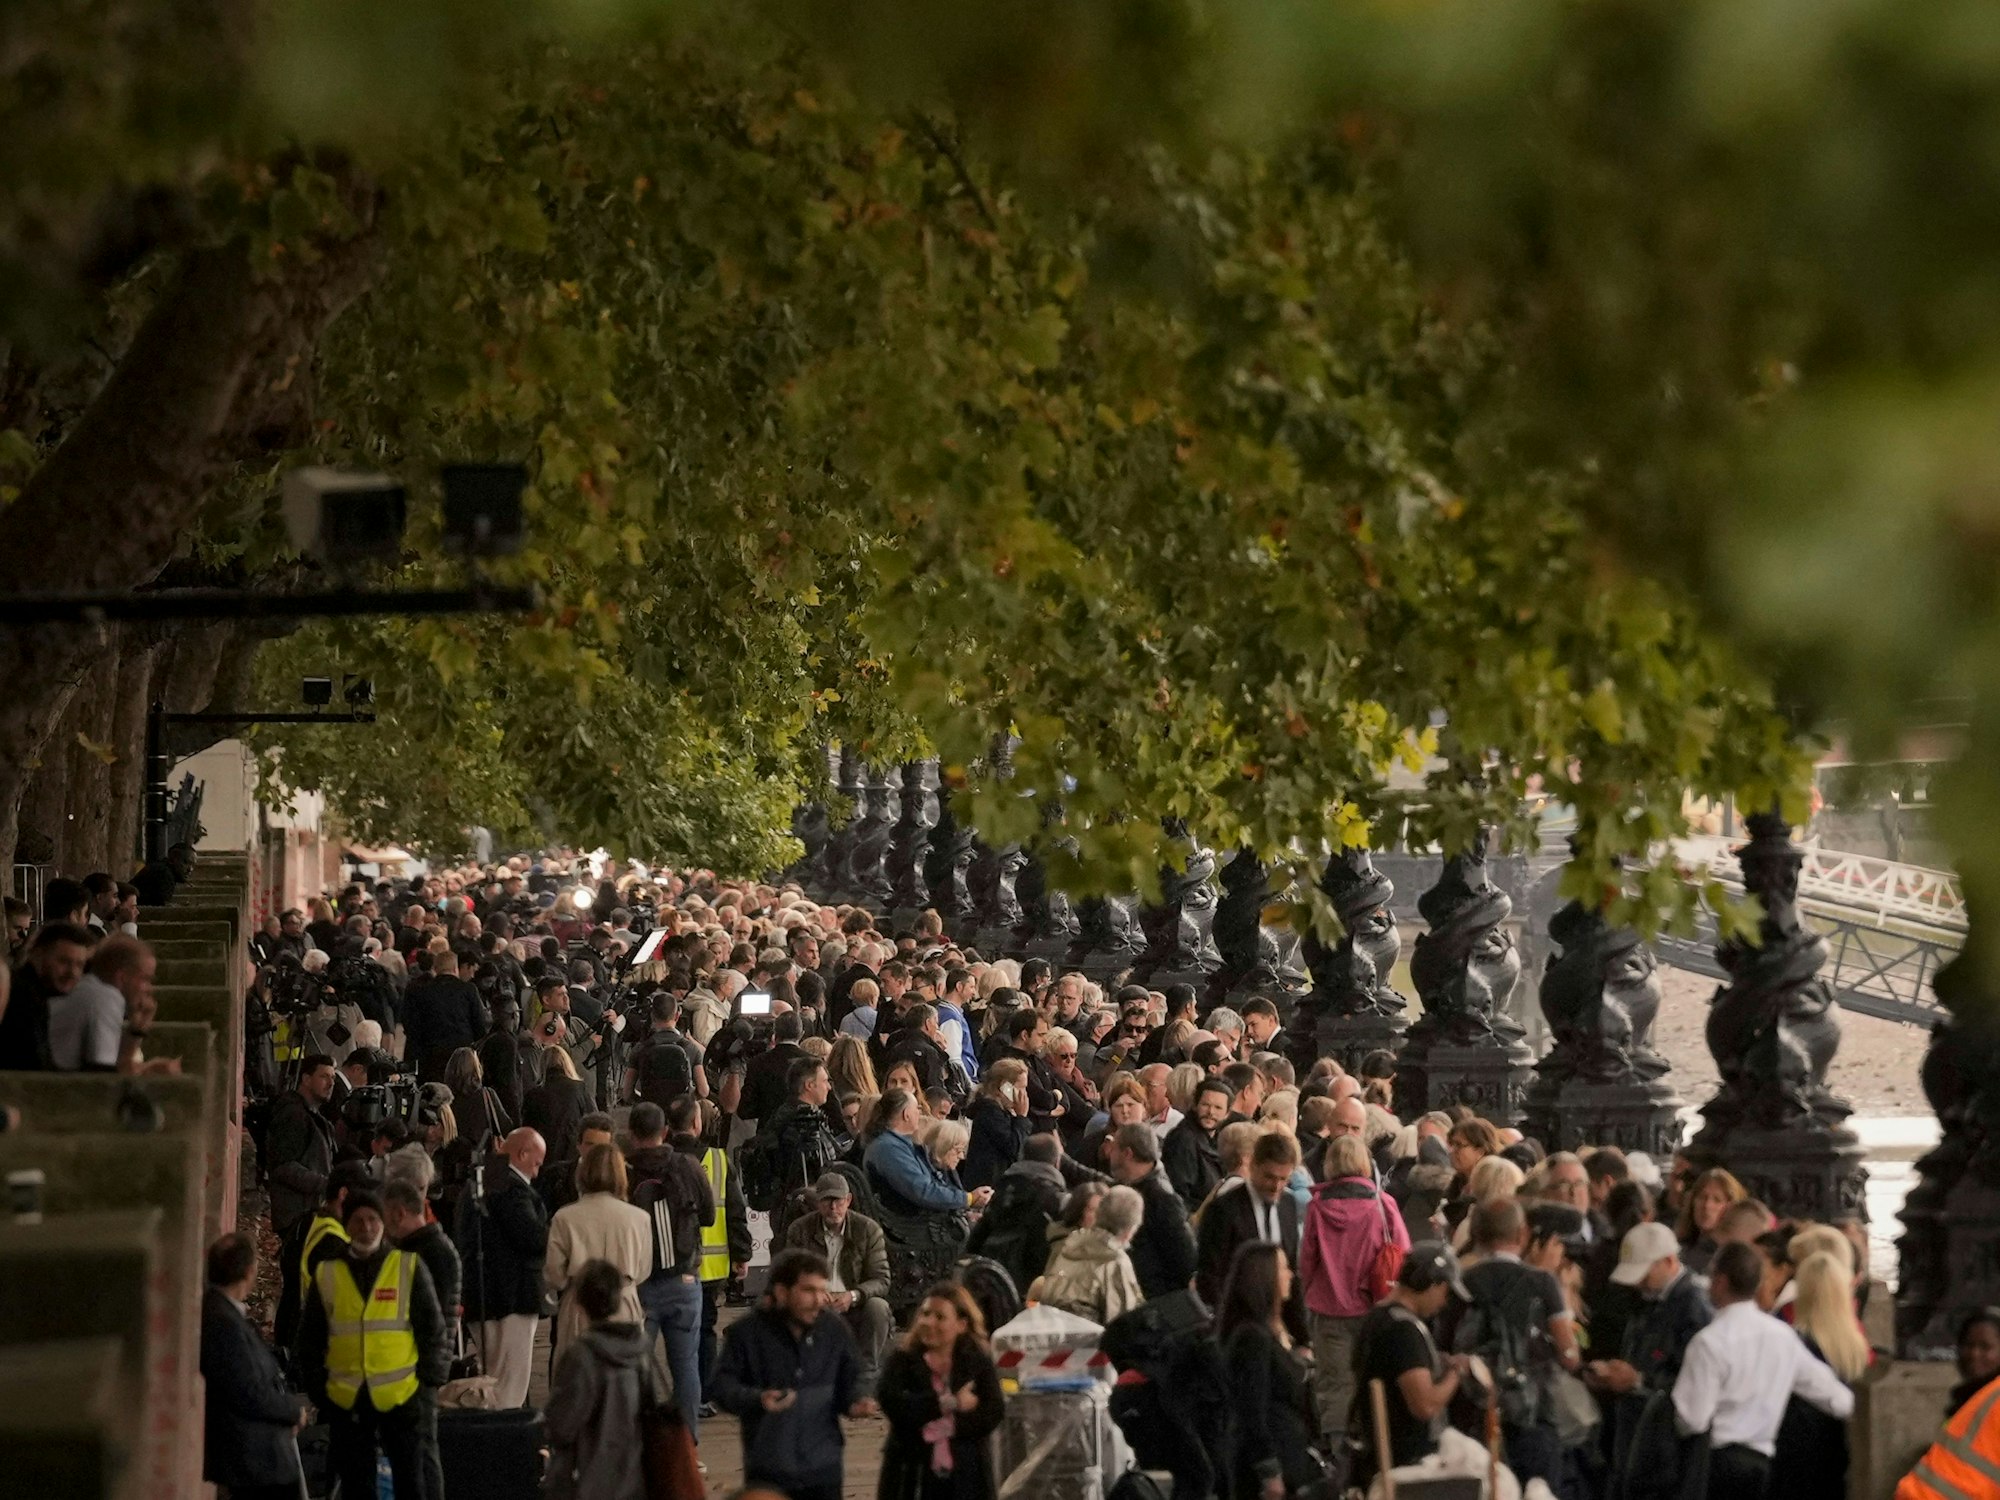 Um ihrer Königin die letzte Ehre zu erweisen, stehen Menschen Schlange vor Westminster Hall - bis zu 30 Stunden!